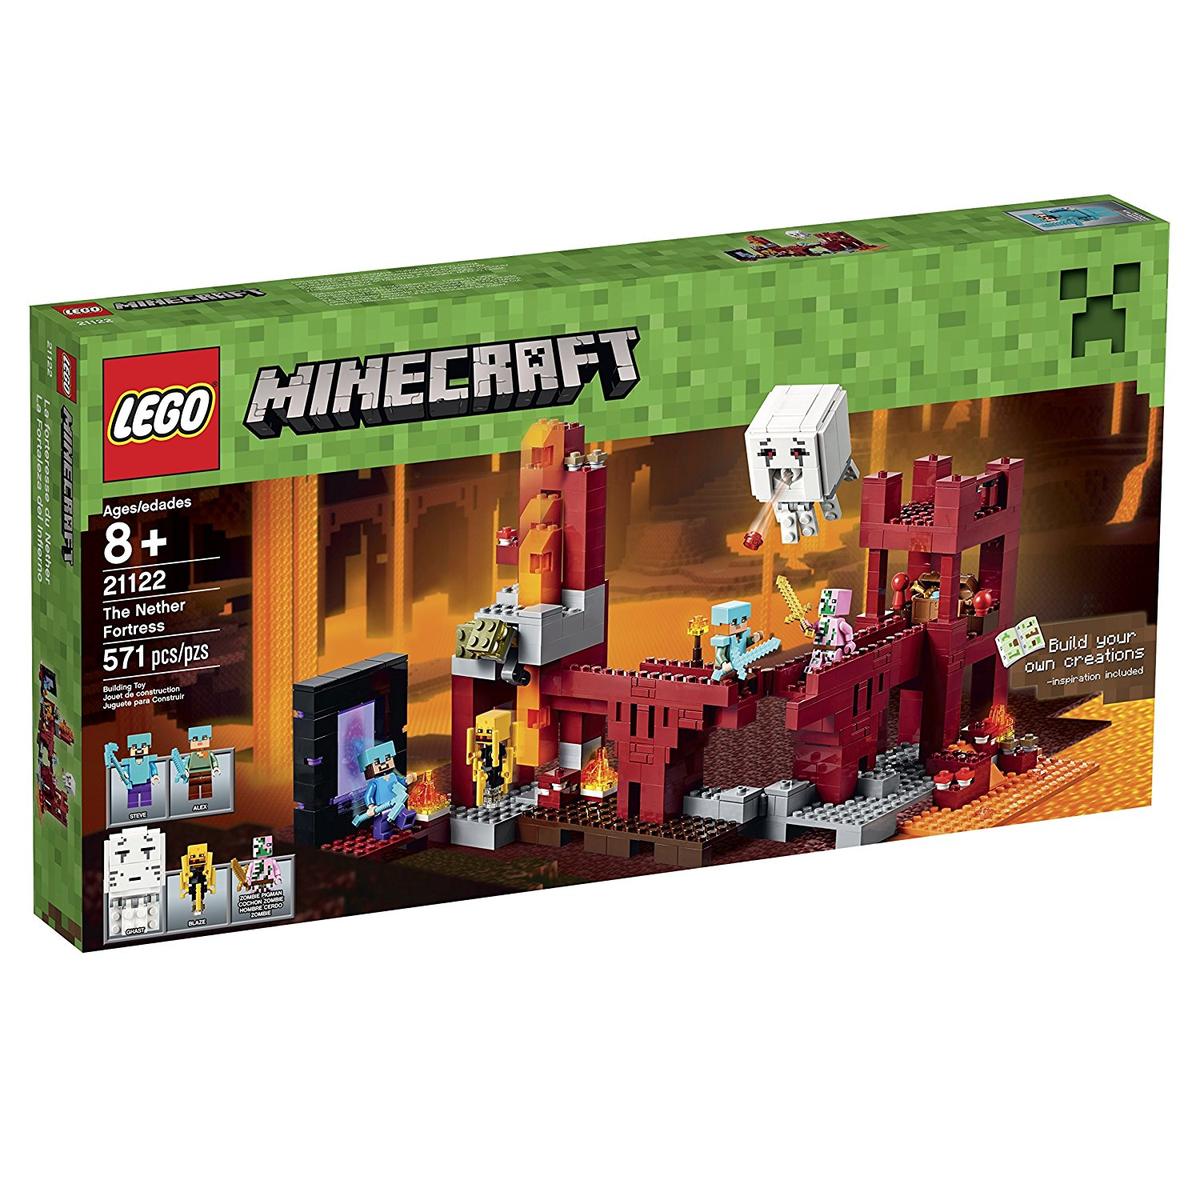 通常便なら送料無料 マインクラフトのネザー要塞 海外版レゴ 売却 希望者のみラッピング無料 マインクラフト レゴ LEGO ブロック テレビゲーム ネザー要塞 おもちゃ 21122 海外版